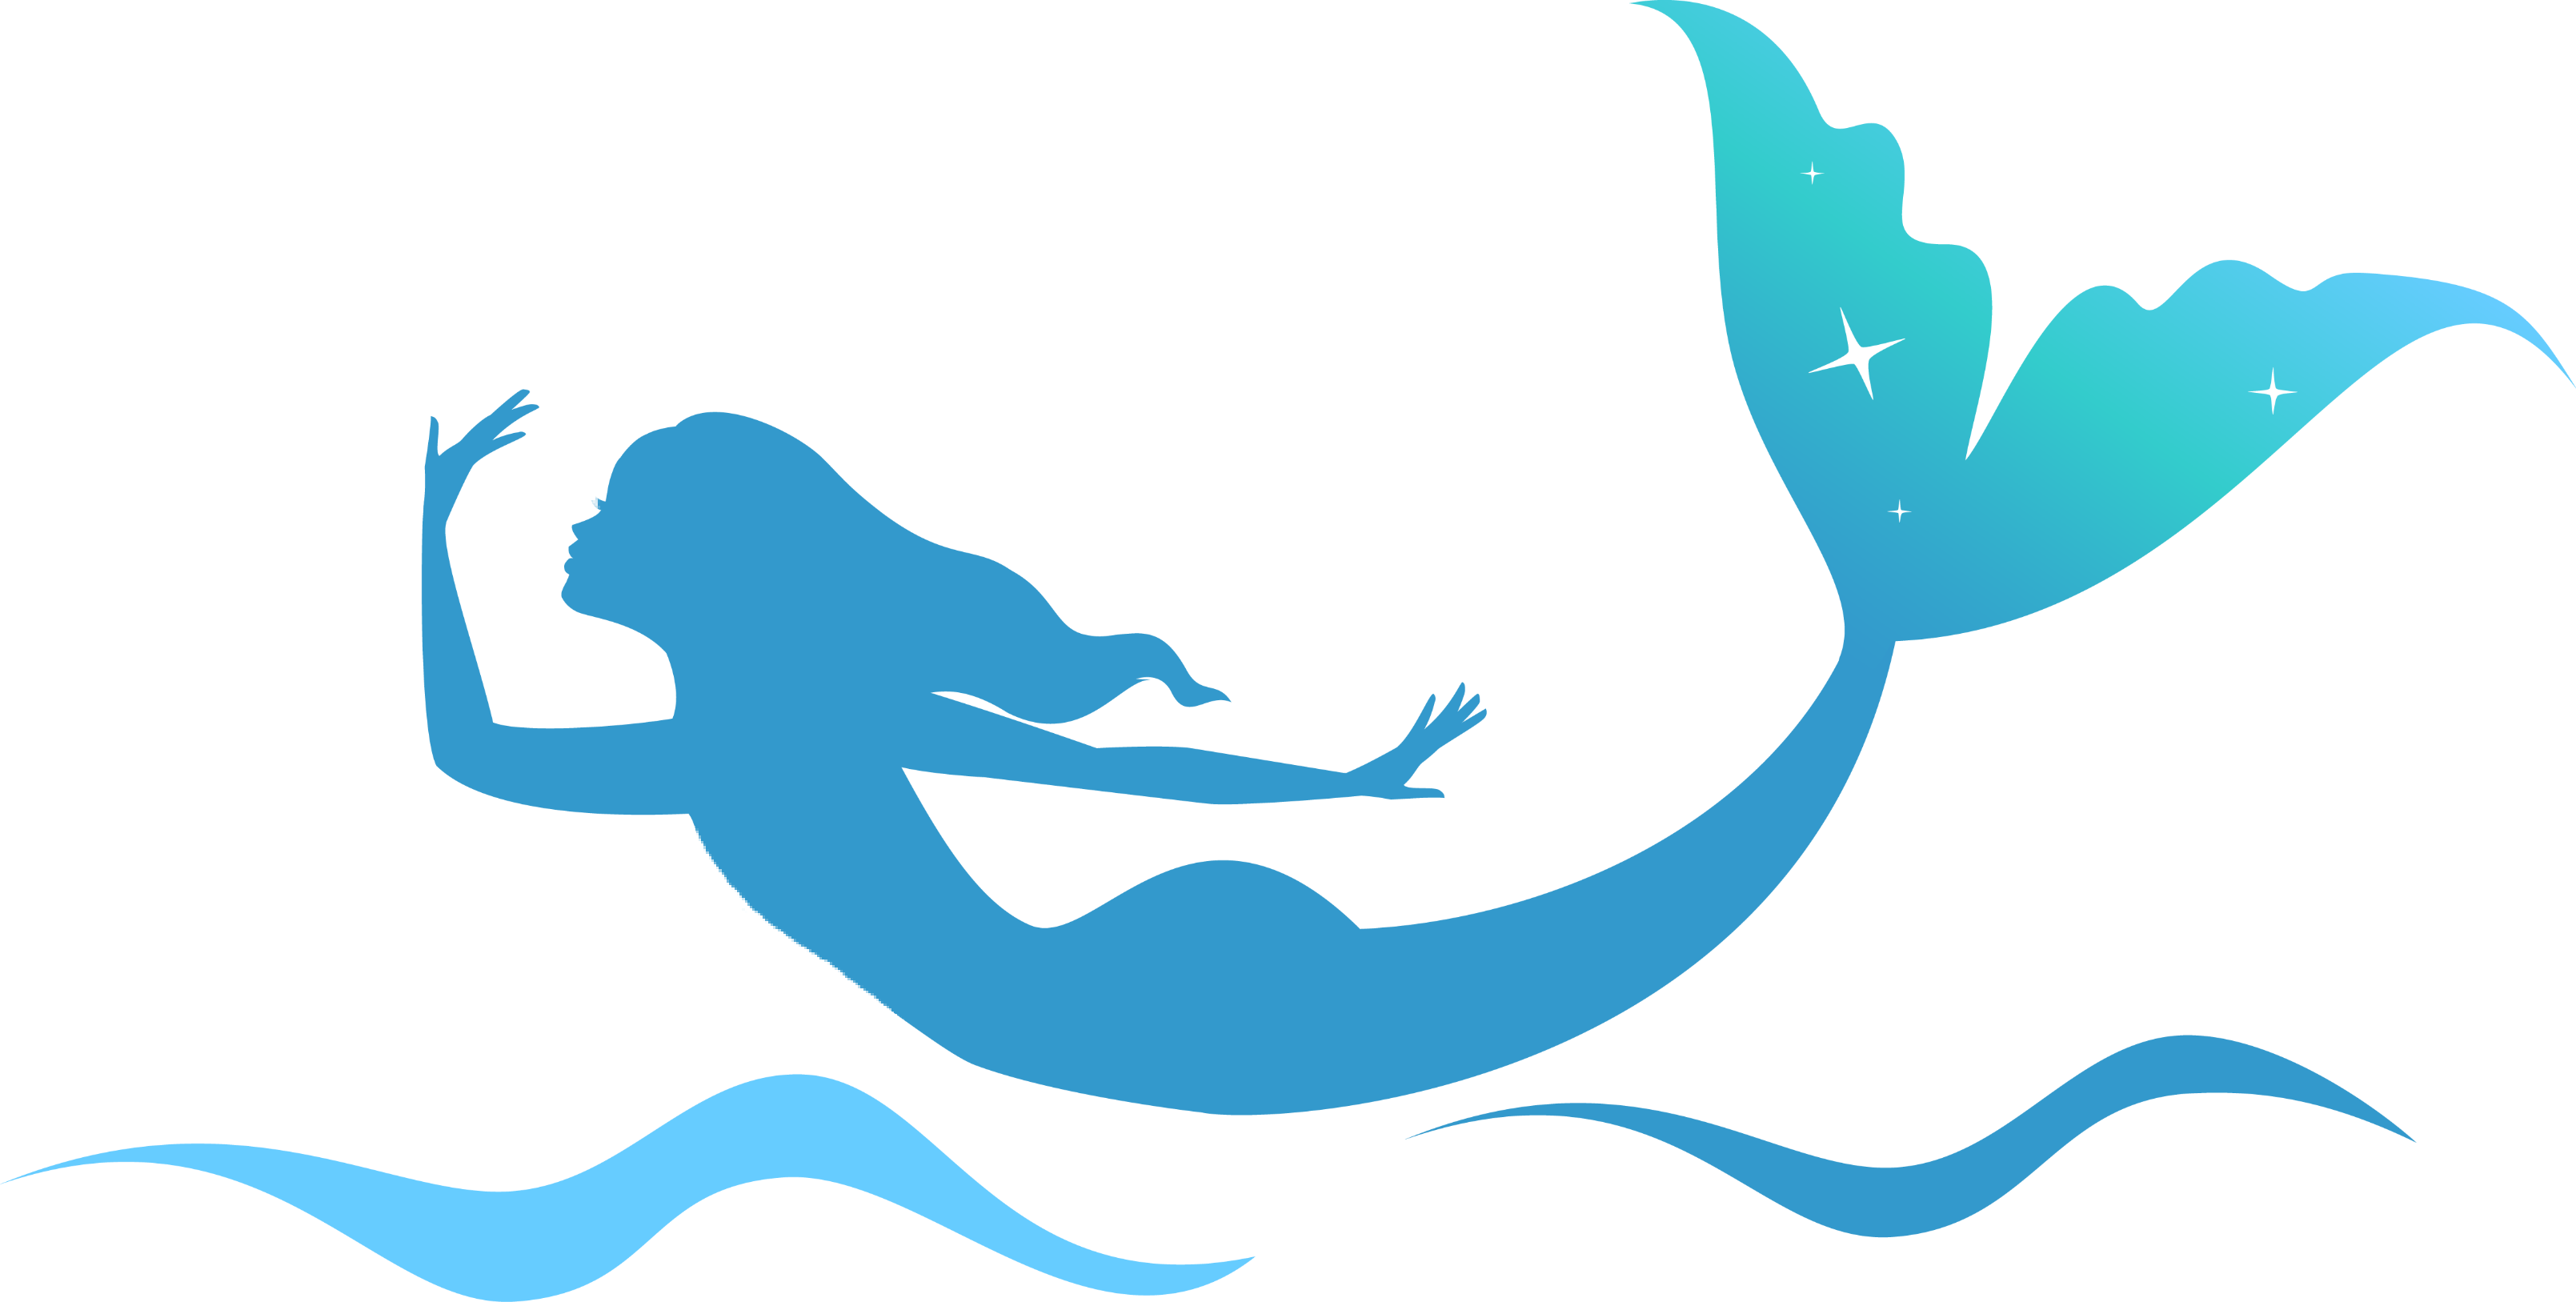 mermaid freetoedit #mermaid sticker by @charleesmbear13.